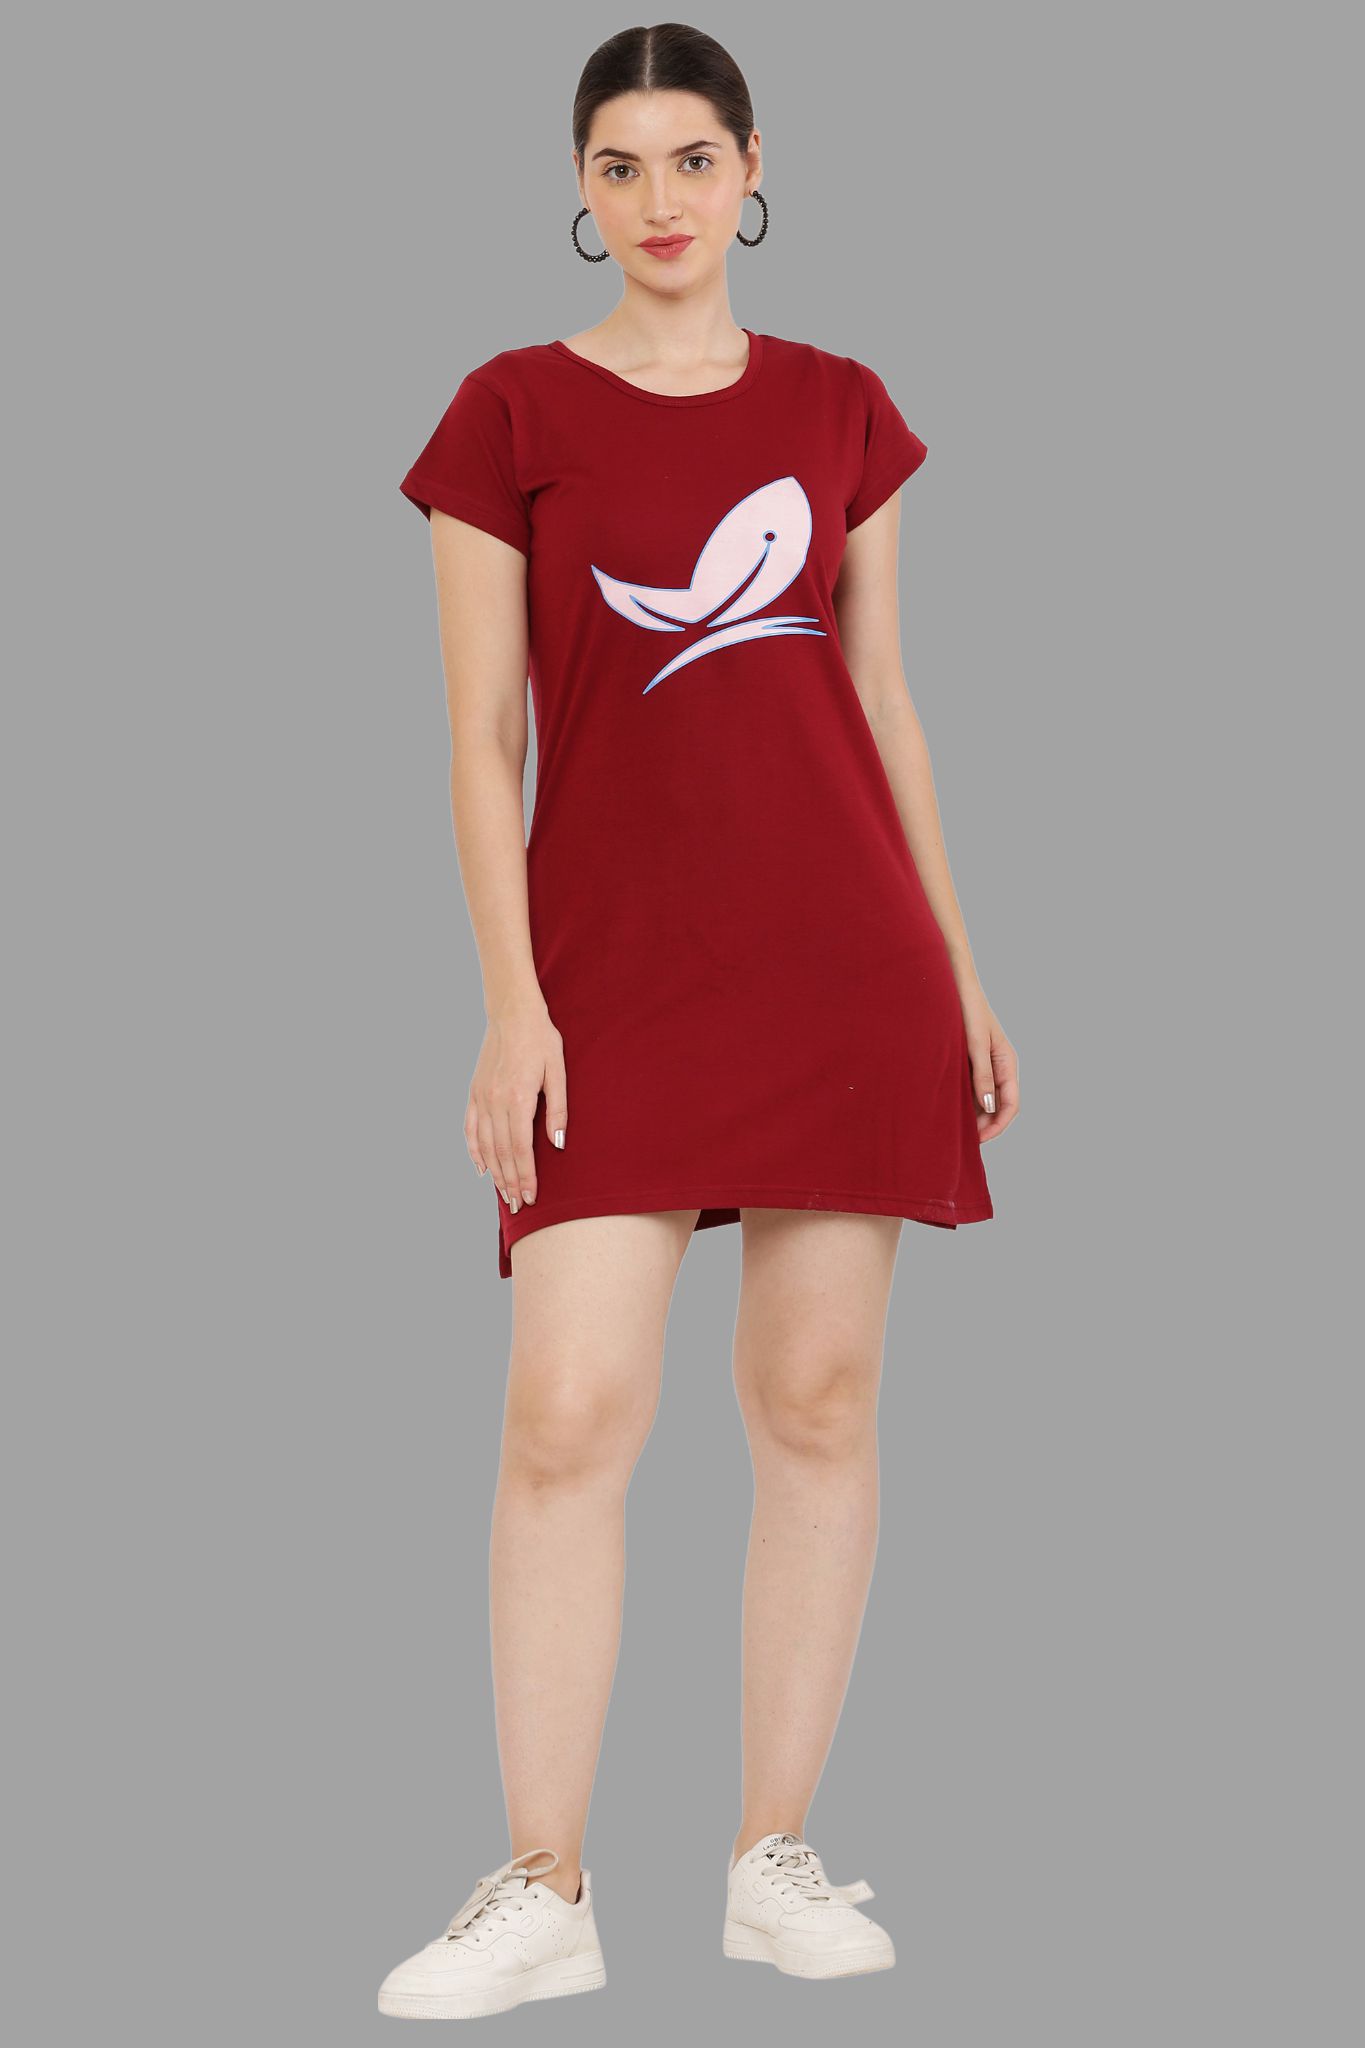     			PREEGO - Maroon Cotton Blend Women's Nightwear Night T-Shirt ( Pack of 1 )